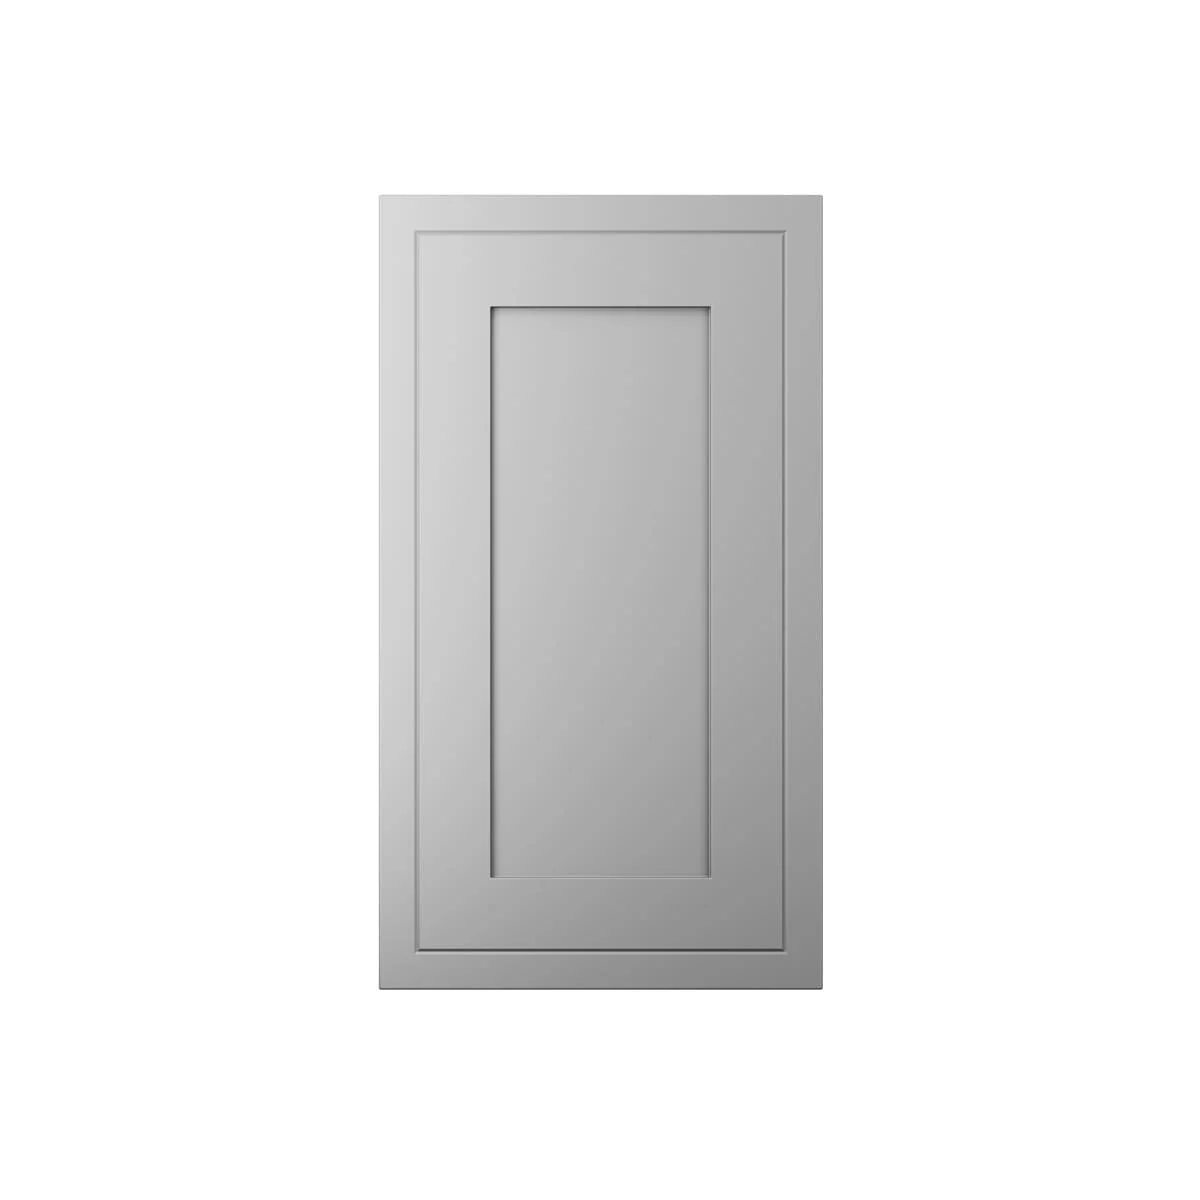 Standard Door with Integrated